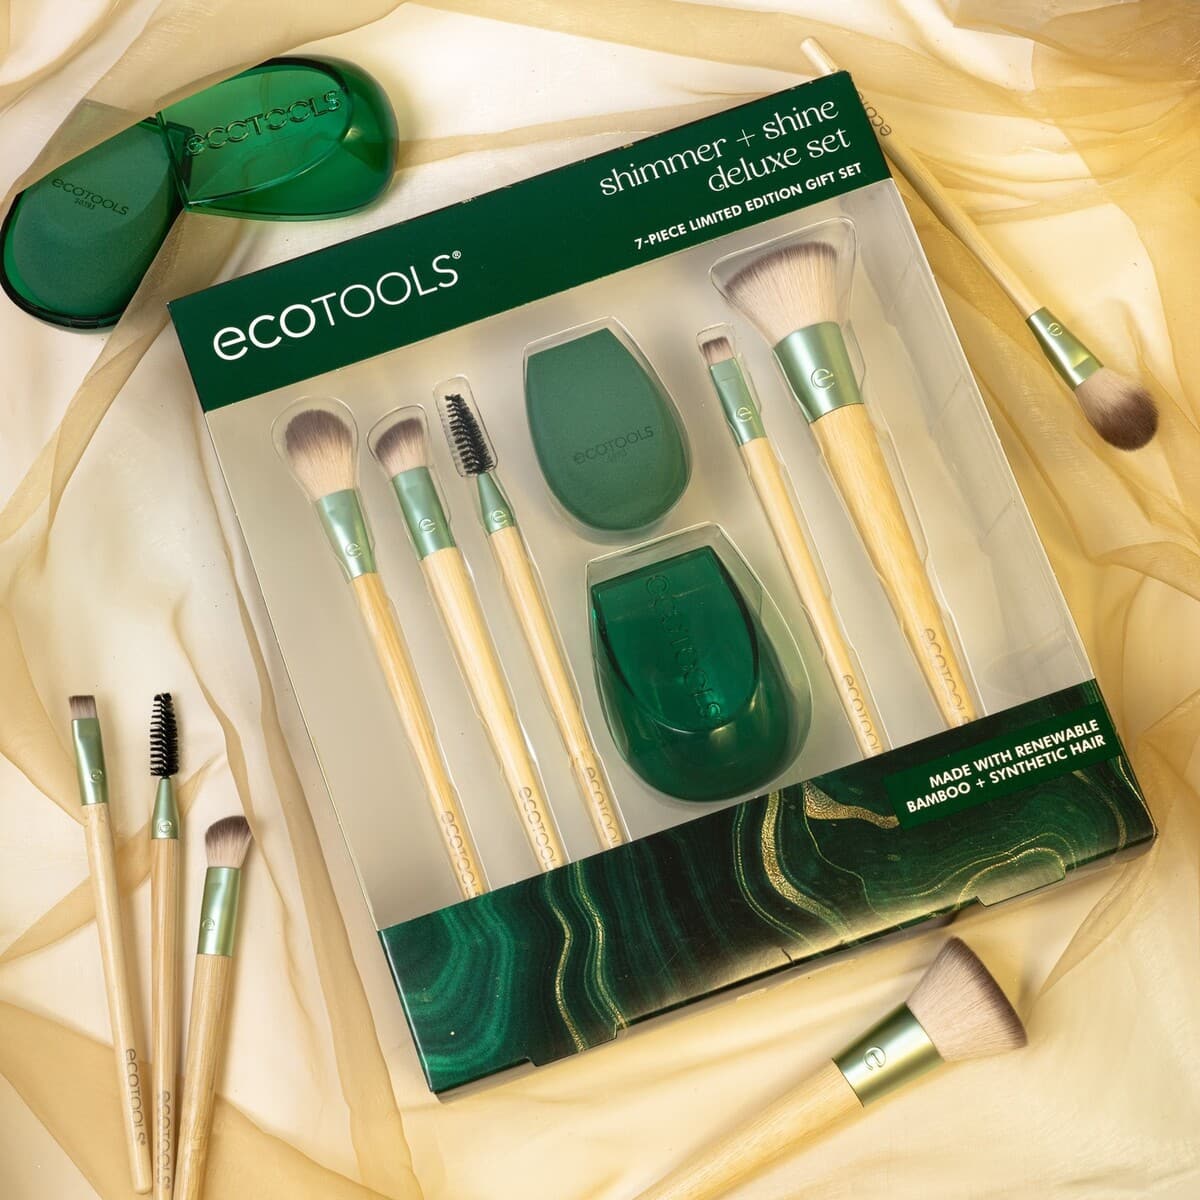 Ecotools makeup brushes